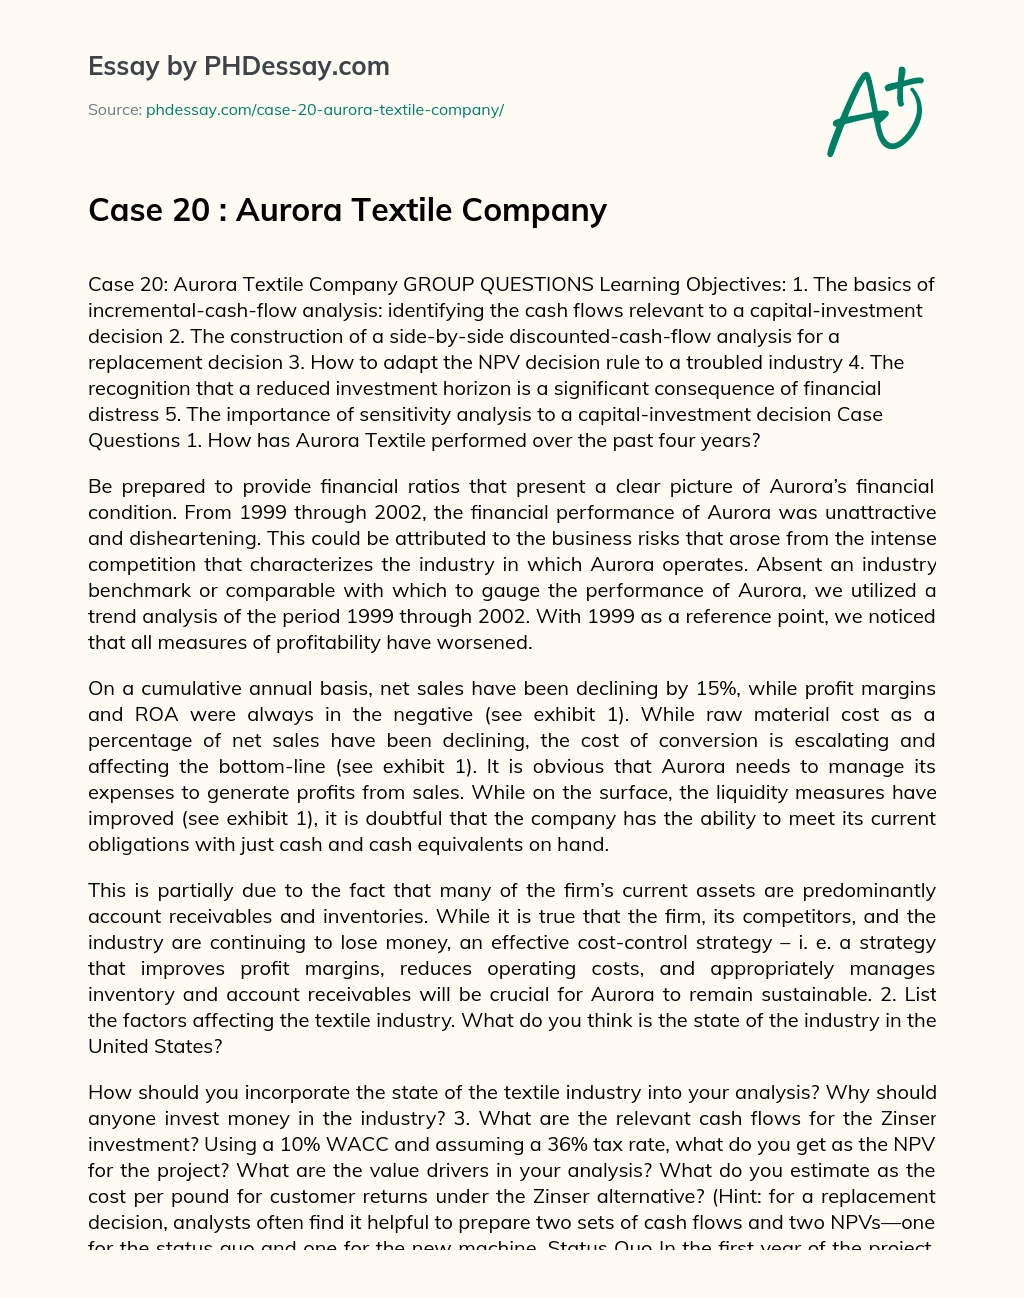 Case 20 : Aurora Textile Company essay